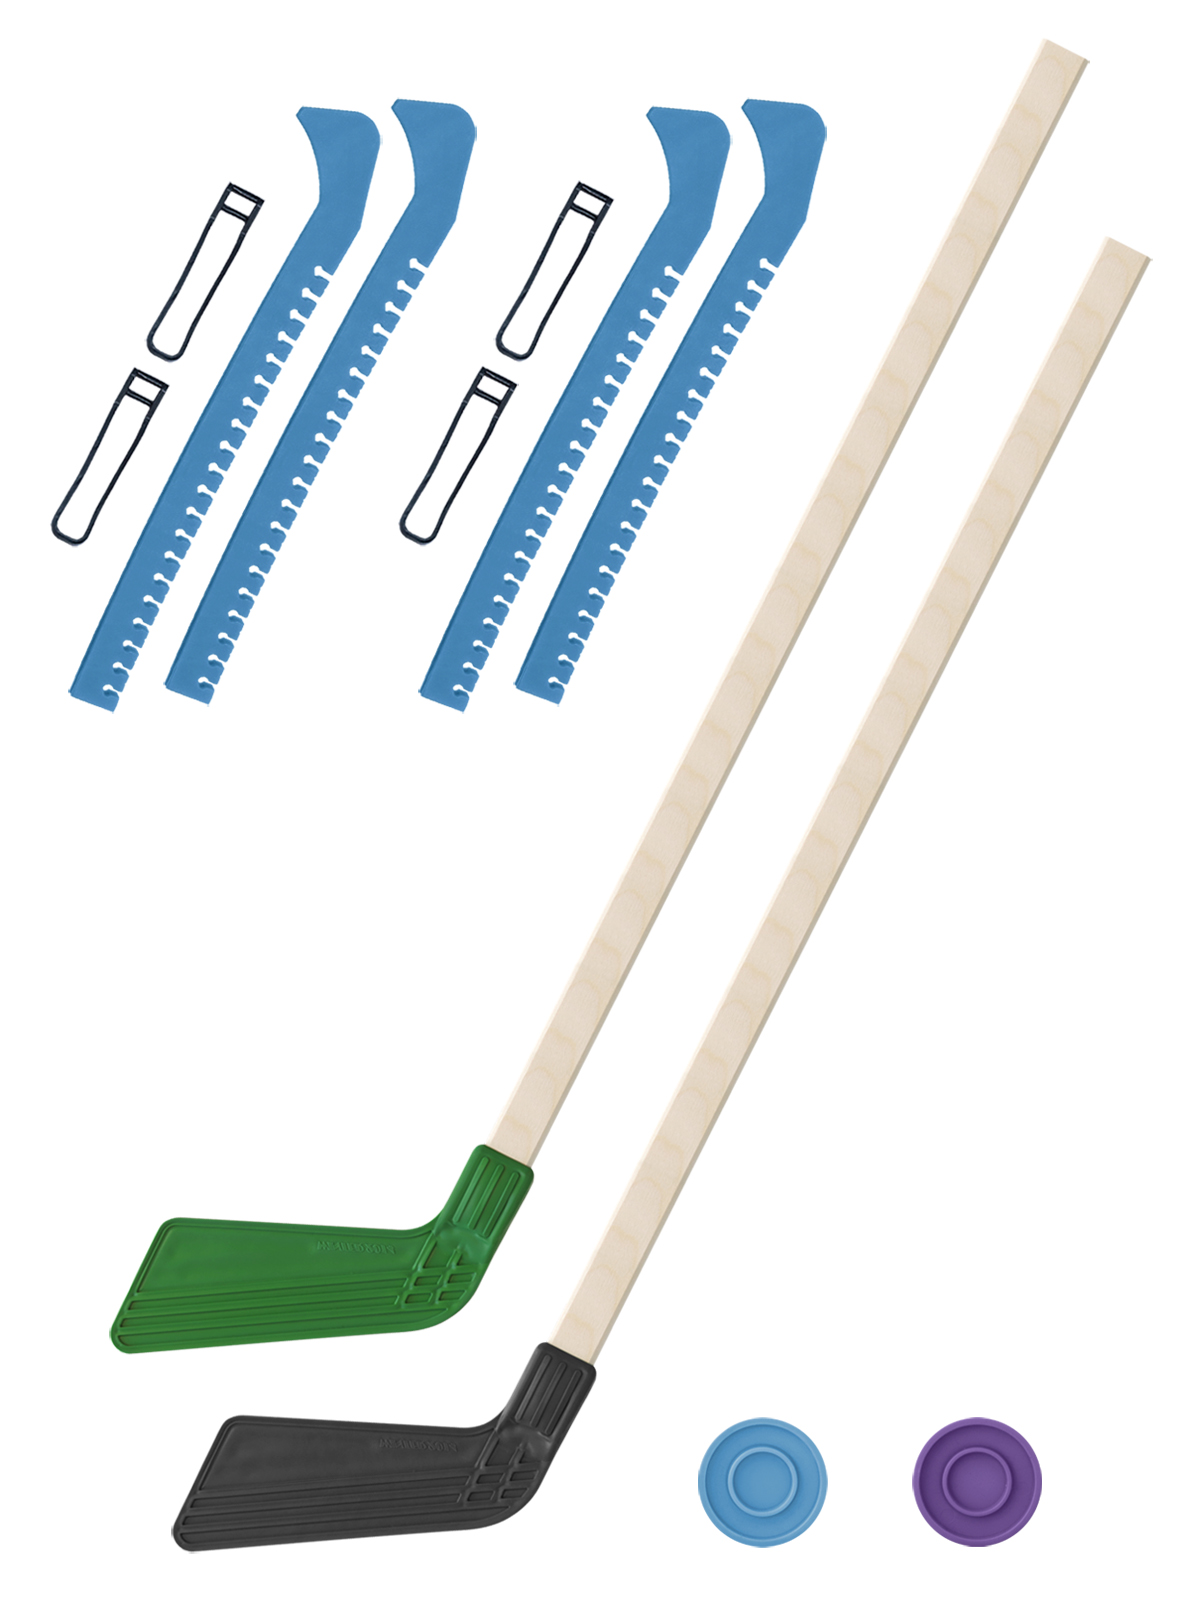 Хоккейный набор Задира-плюс клюшка детская(зел+чер)2шт+2шайбы+чехлы для коньков голуб 2шт